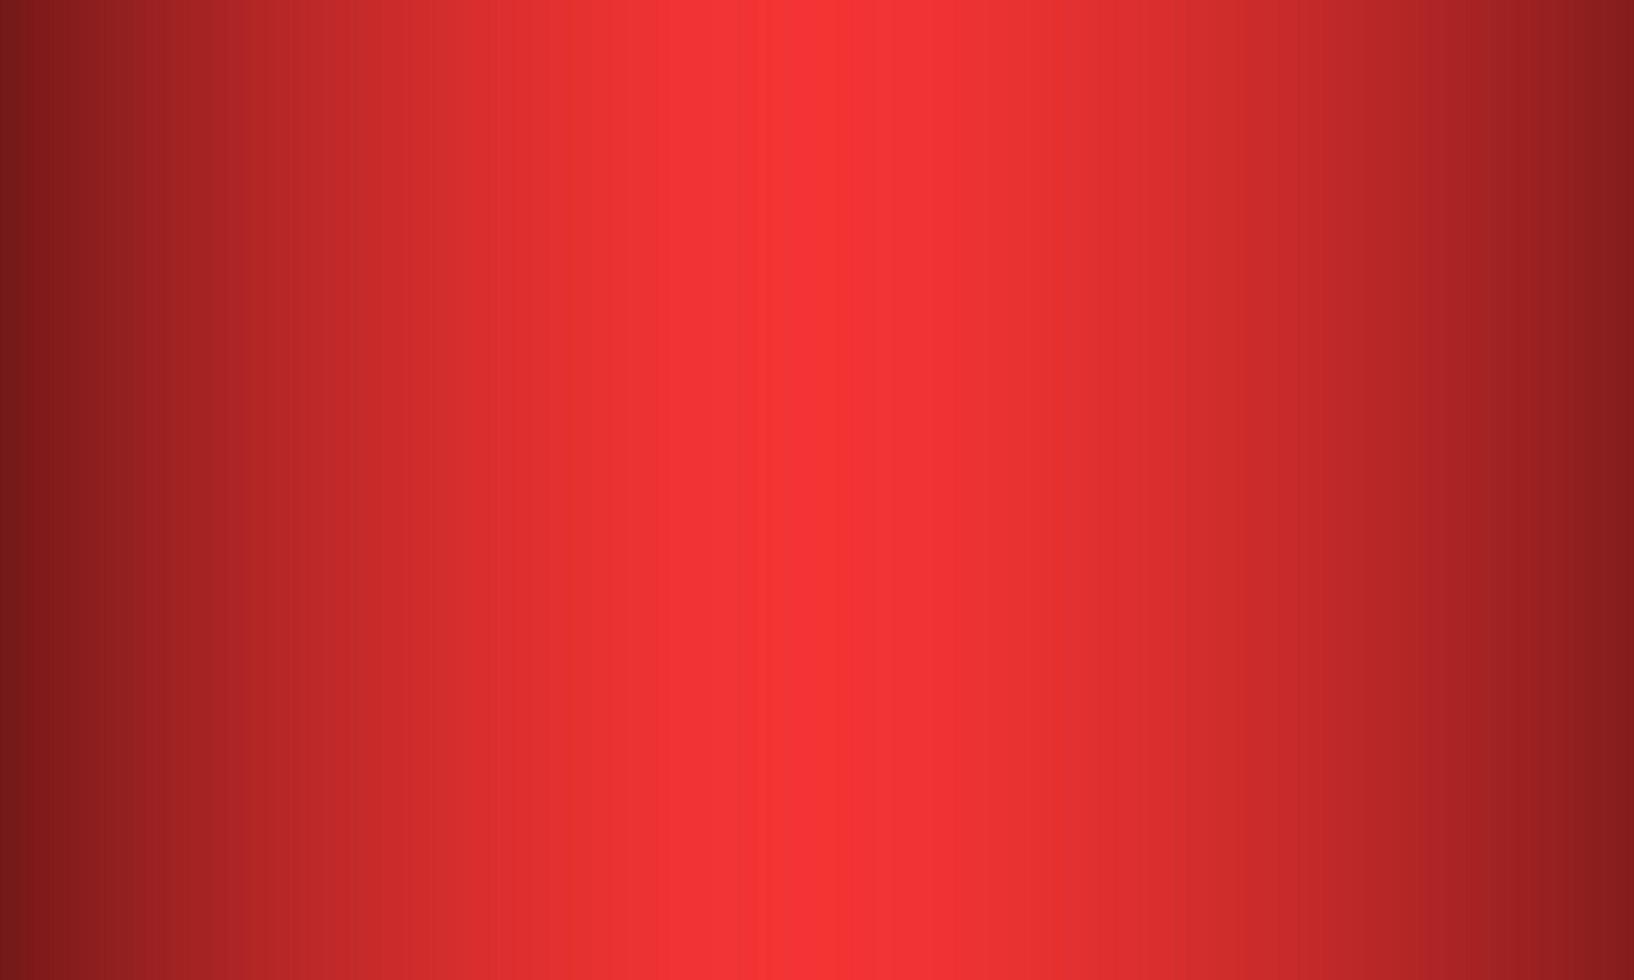 hermoso fondo abstracto de color rojo horizontal foto